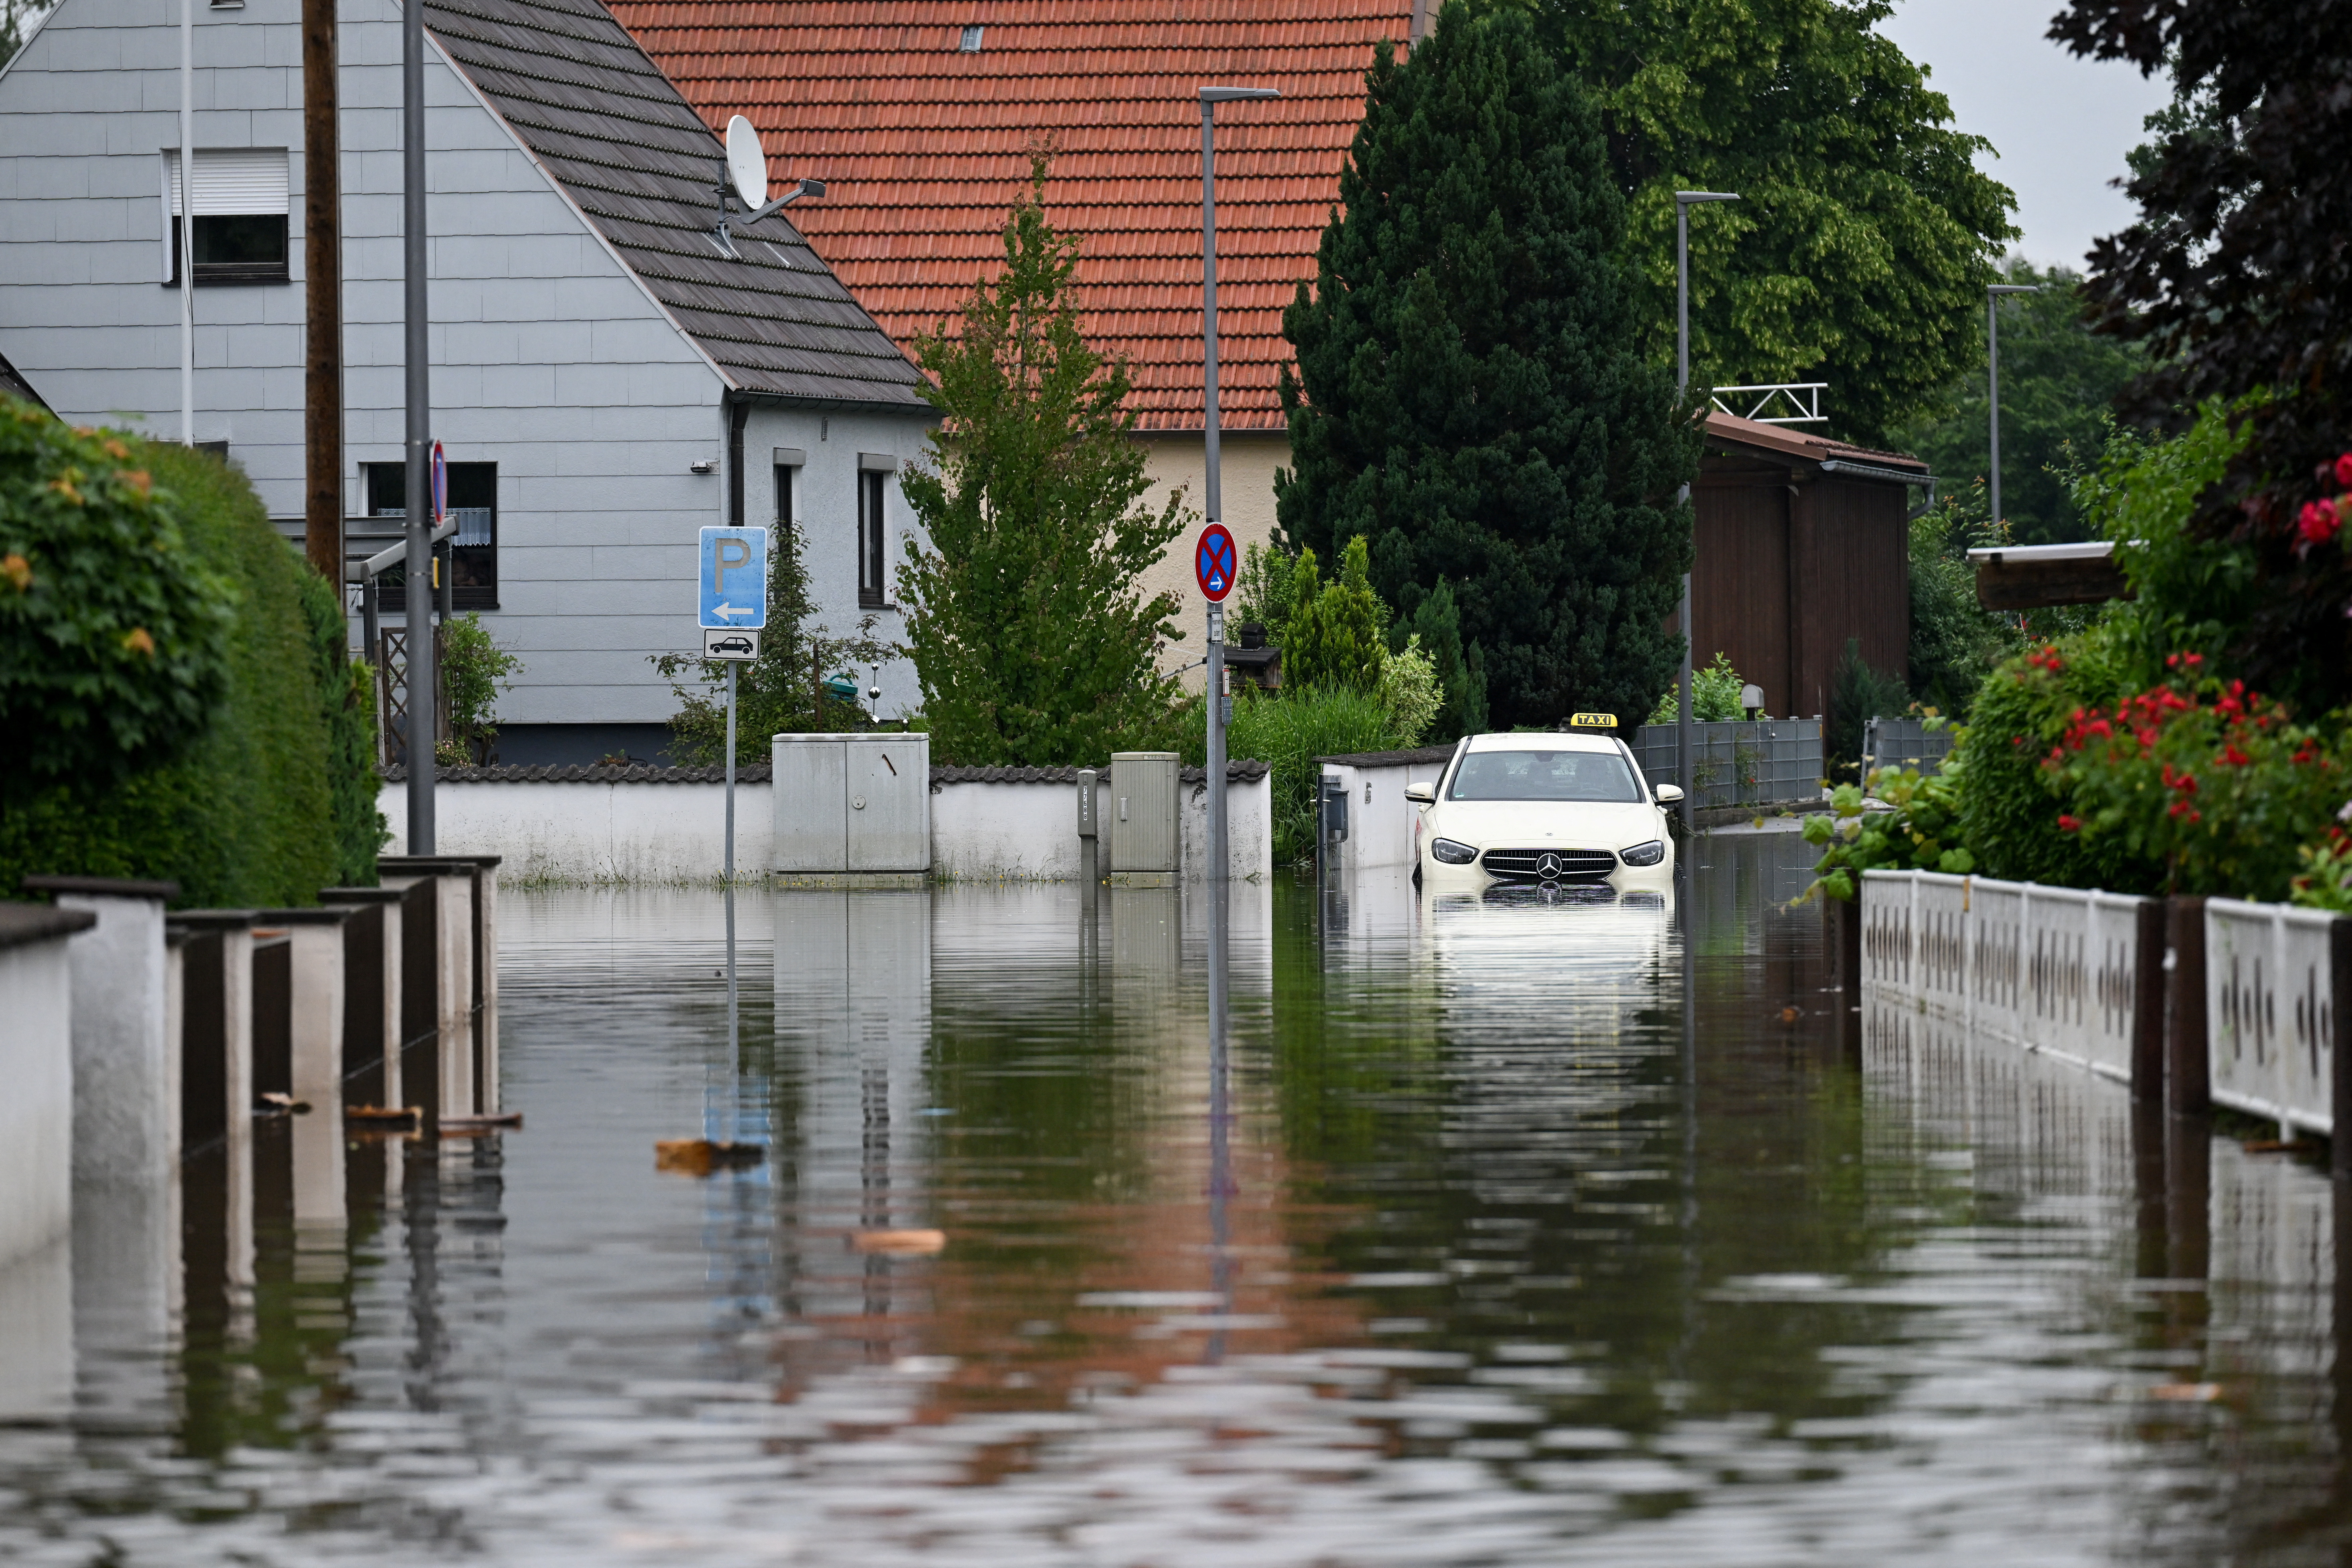 Aftermath of severe flooding, in Reichertshofen